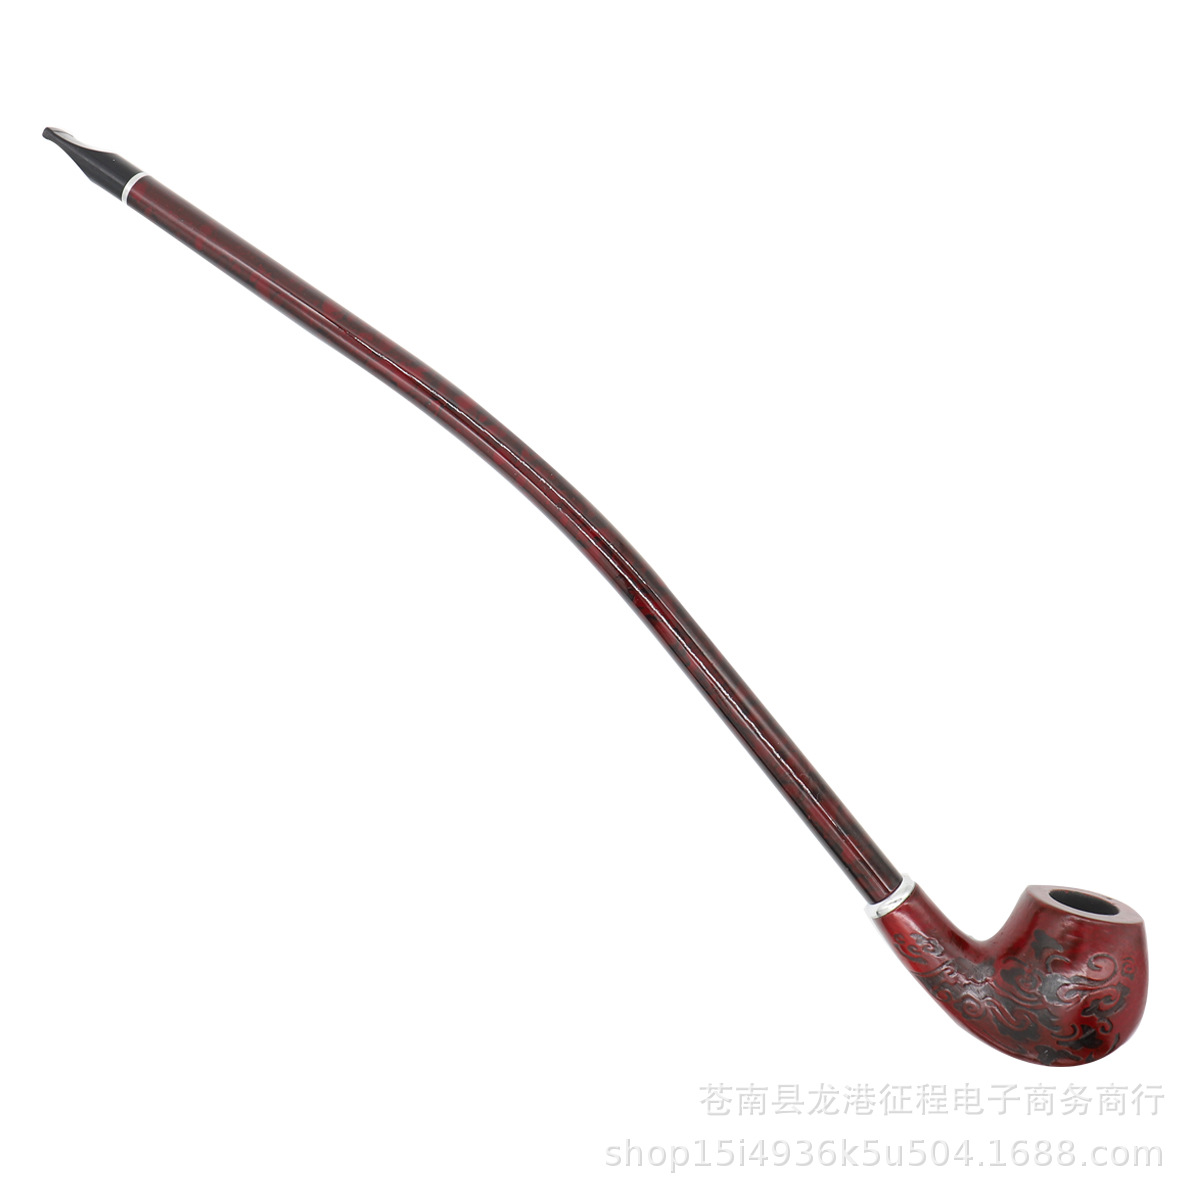 Pipes pour fumer en gros tuyau en bois de résine rouge sculpté long tuyau en bois mince longue tige